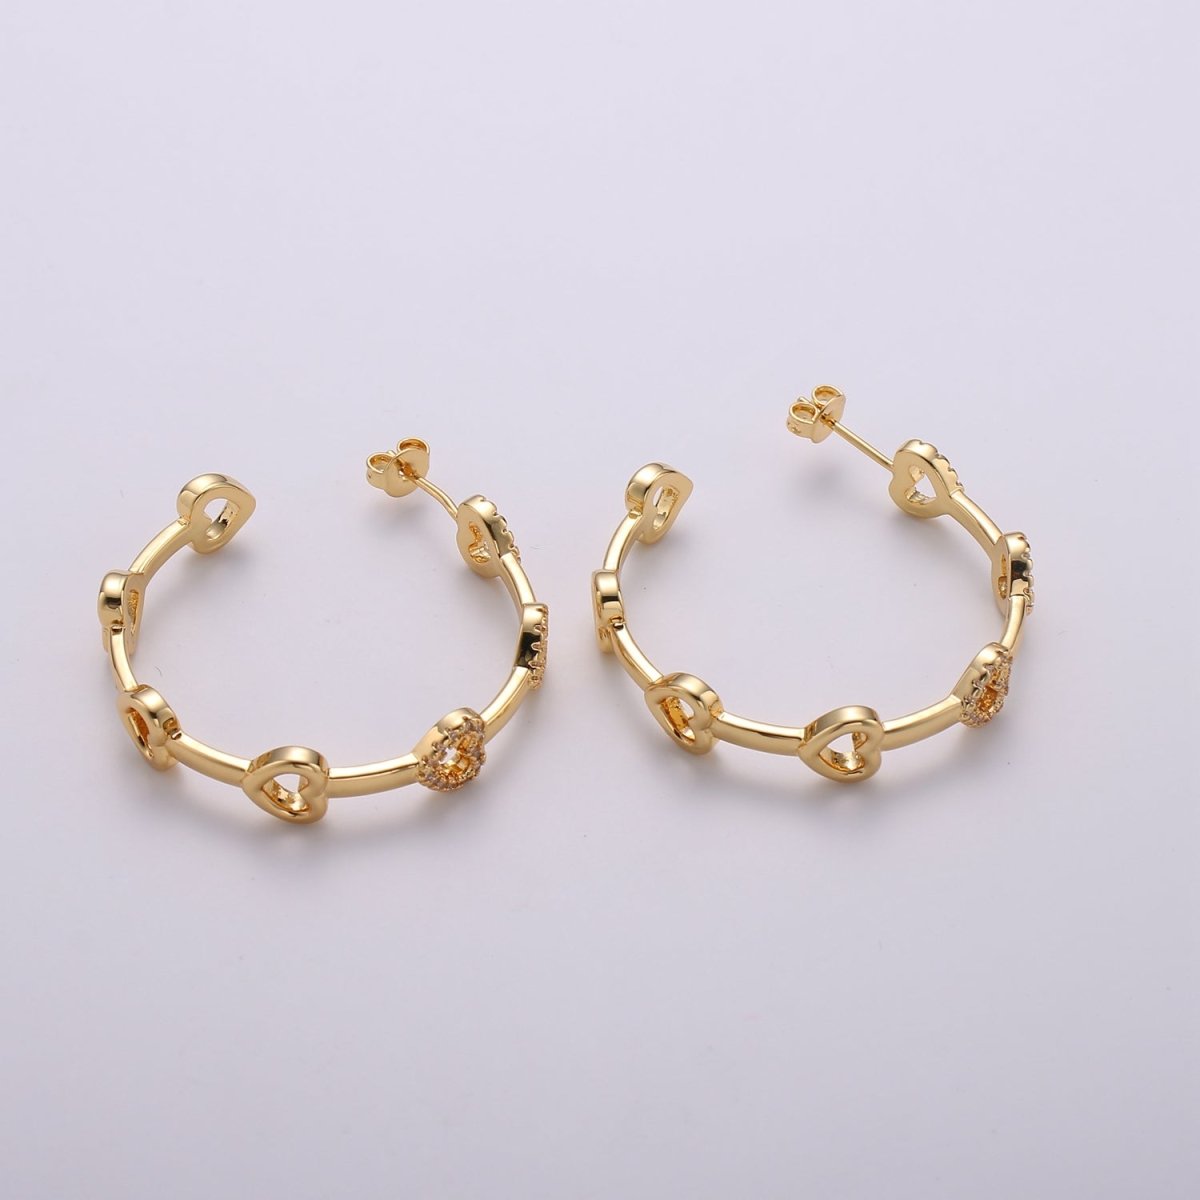 24k Gold Earrings, Hoop Earrings, Heart Hoop, CZ Circle Earring, Gift for Her, Earrings for Women, Everyday Wear Earring Q-535 - DLUXCA